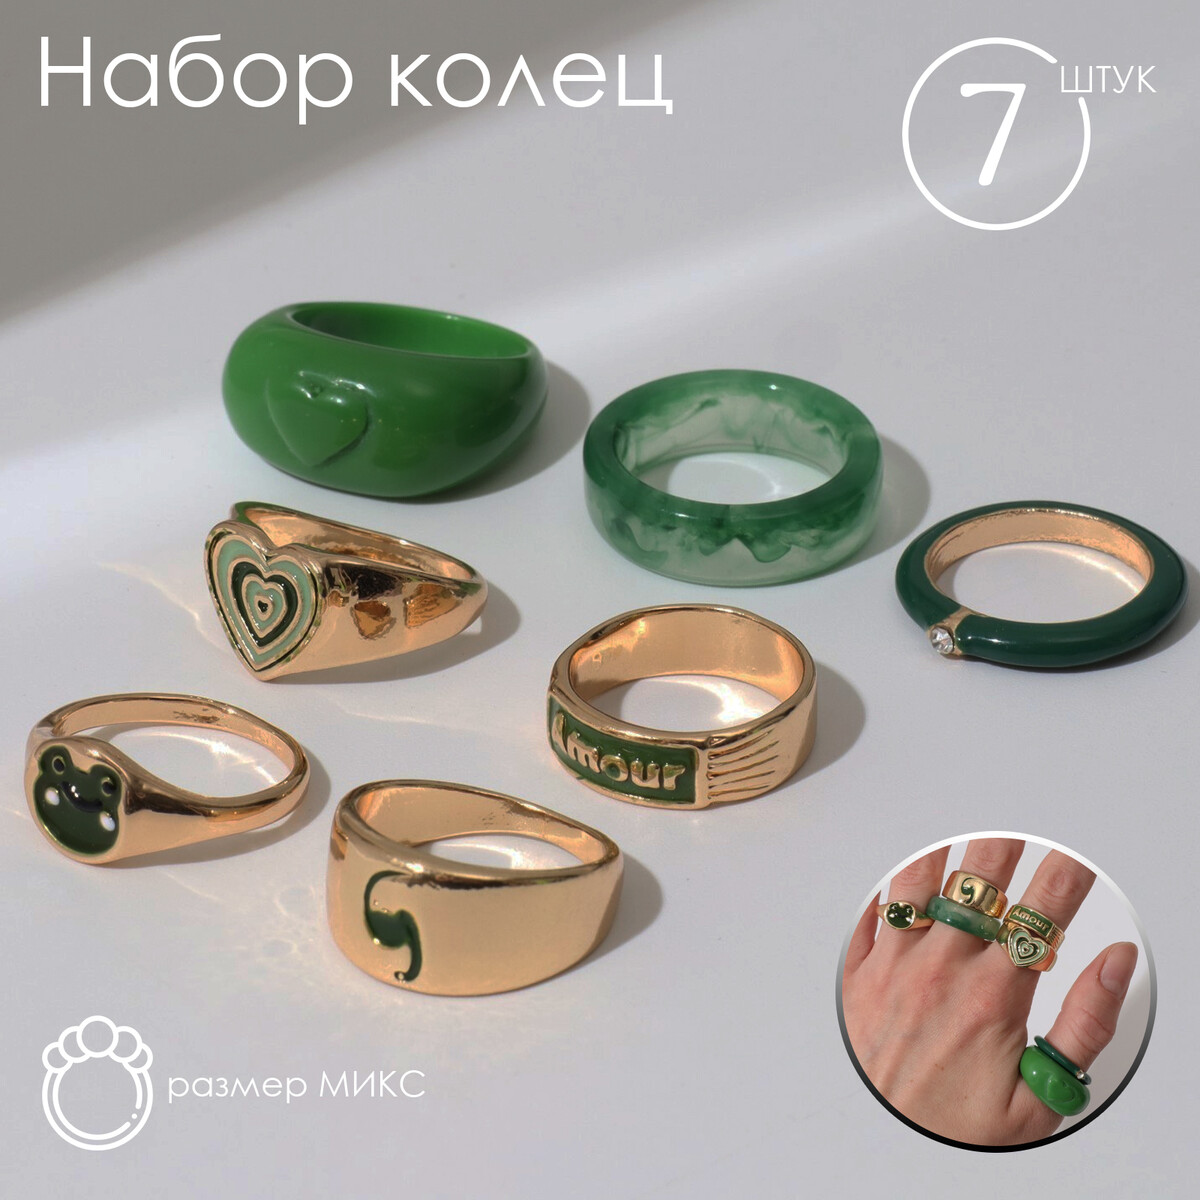 Набор колец 7 штук amour, цвет зеленый в золоте, 16-18 размеры досье на ковид бой с вирусом который постоянно меняет свои размеры форму и свойства